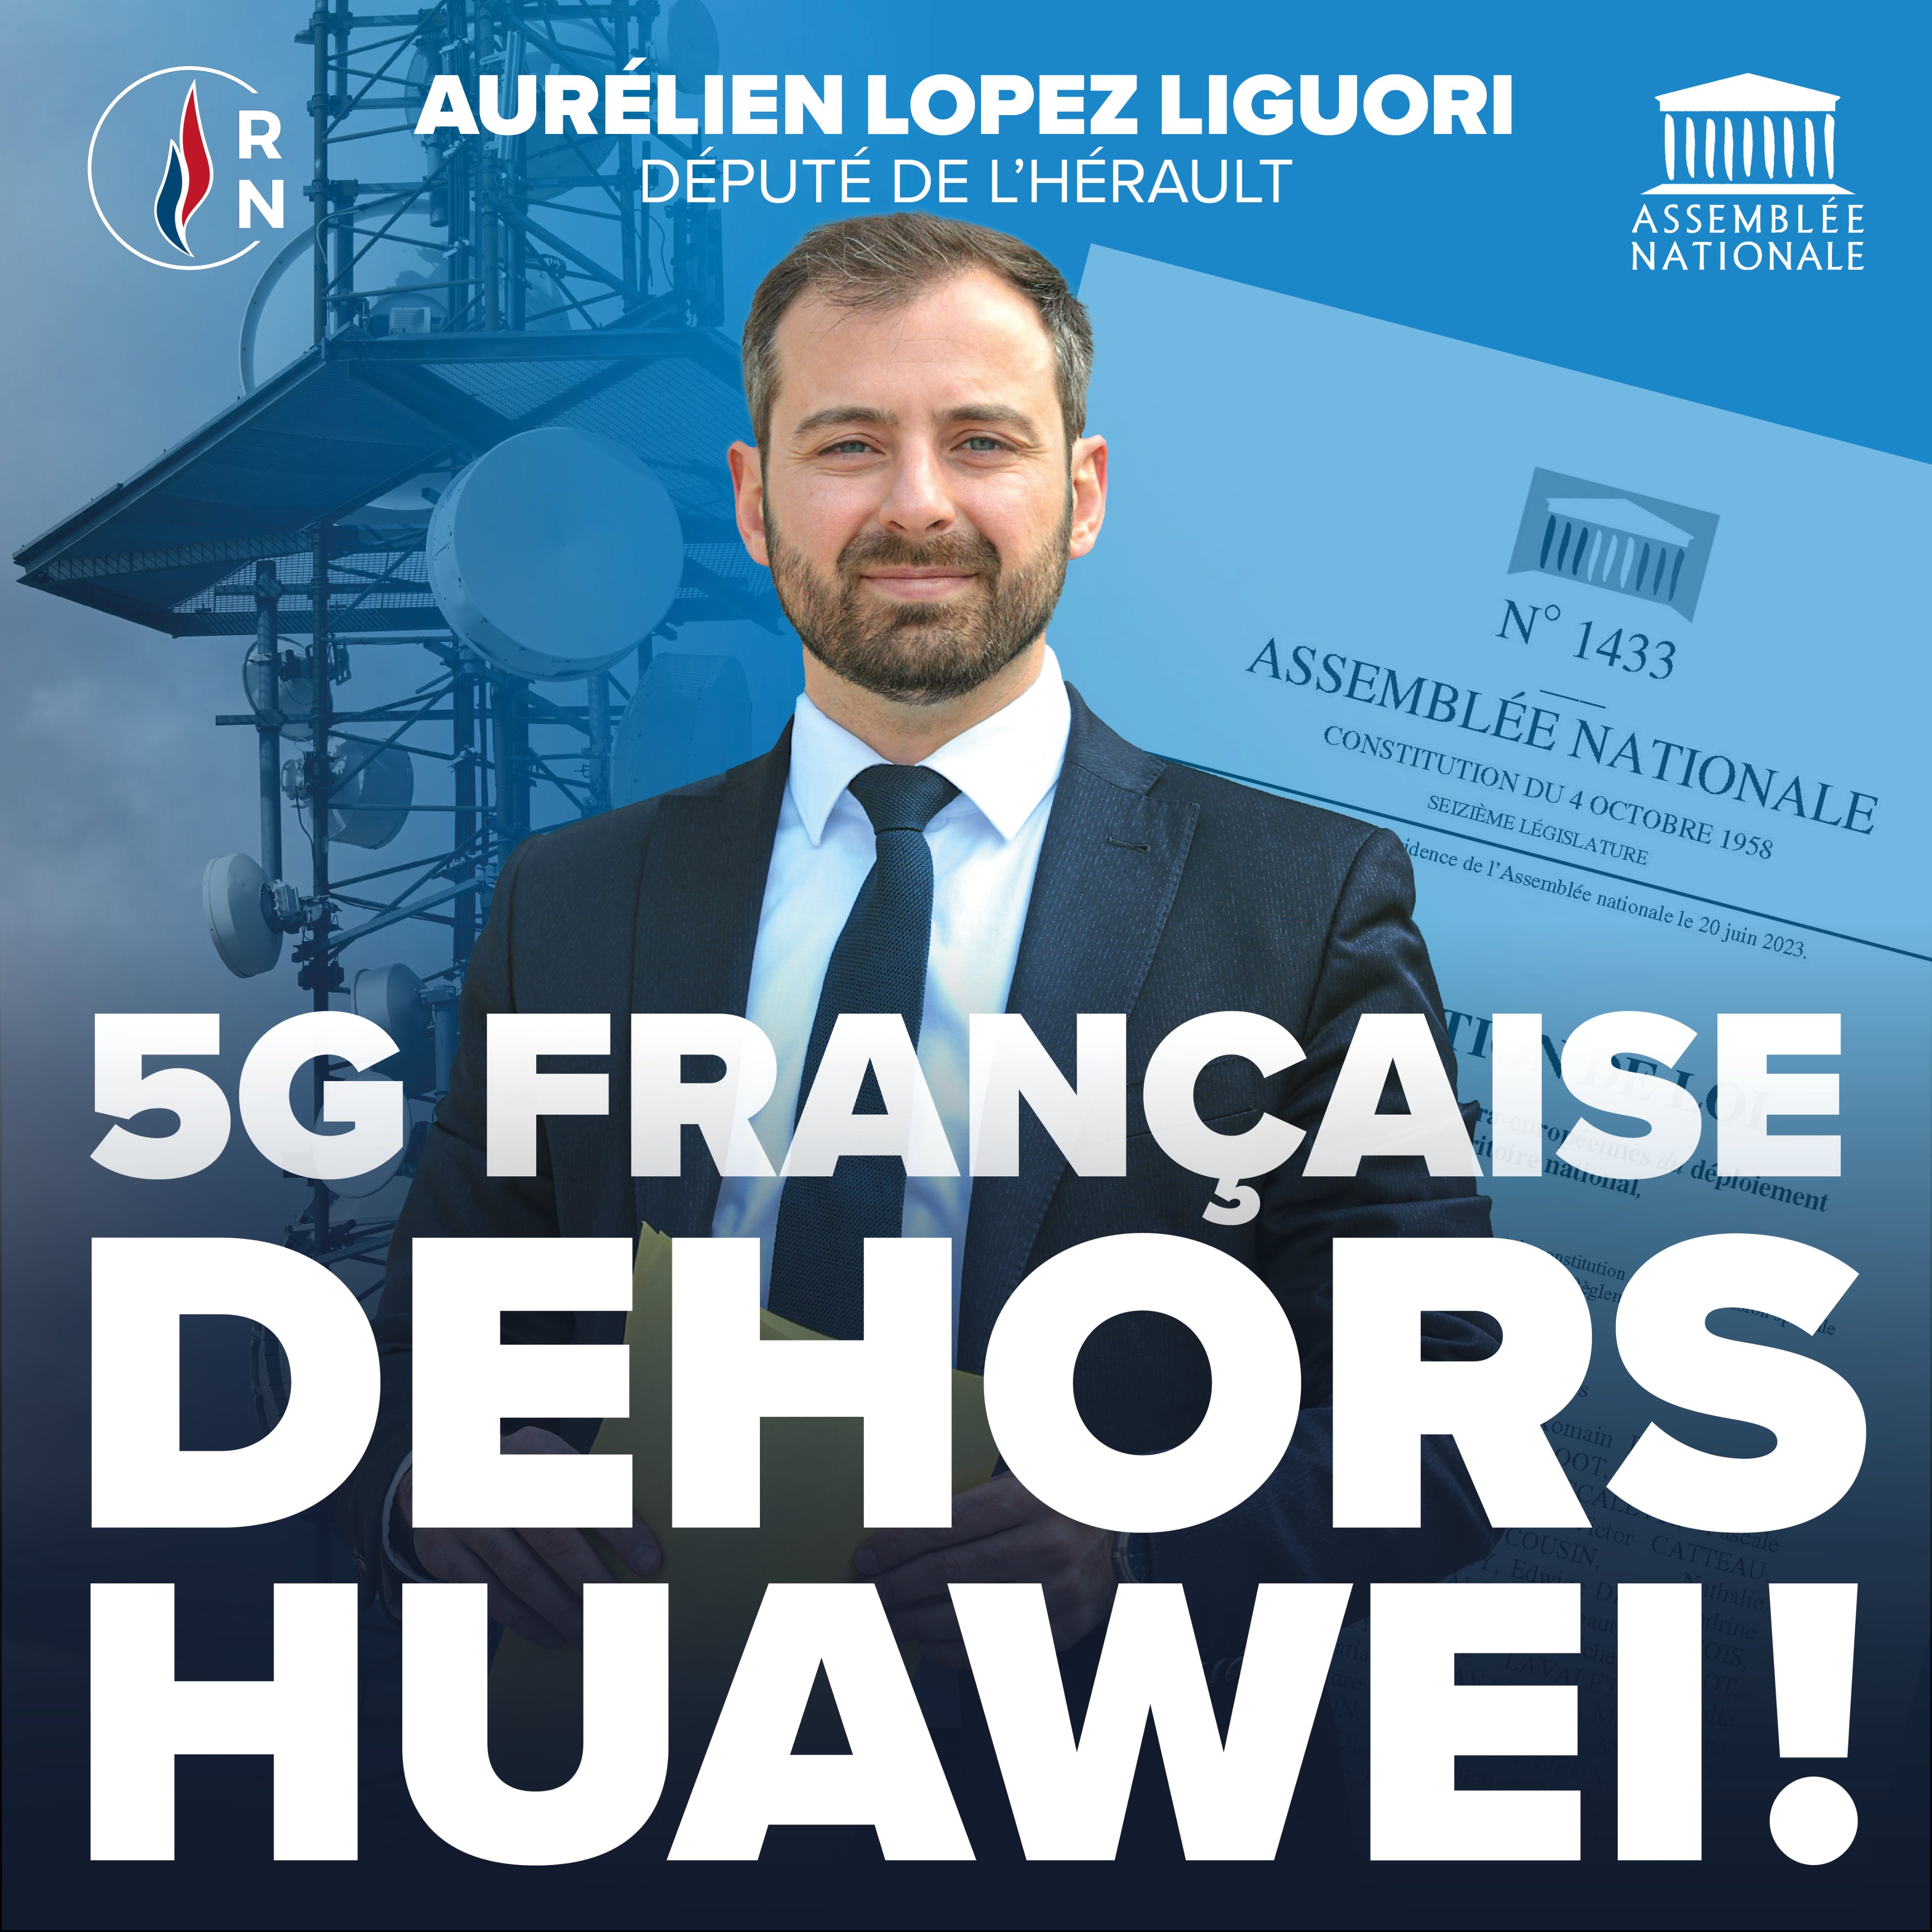 Hérault - Pour bannir la 5G Huawei de France Aurélien Lopez-Liguori dépose une proposition de loi